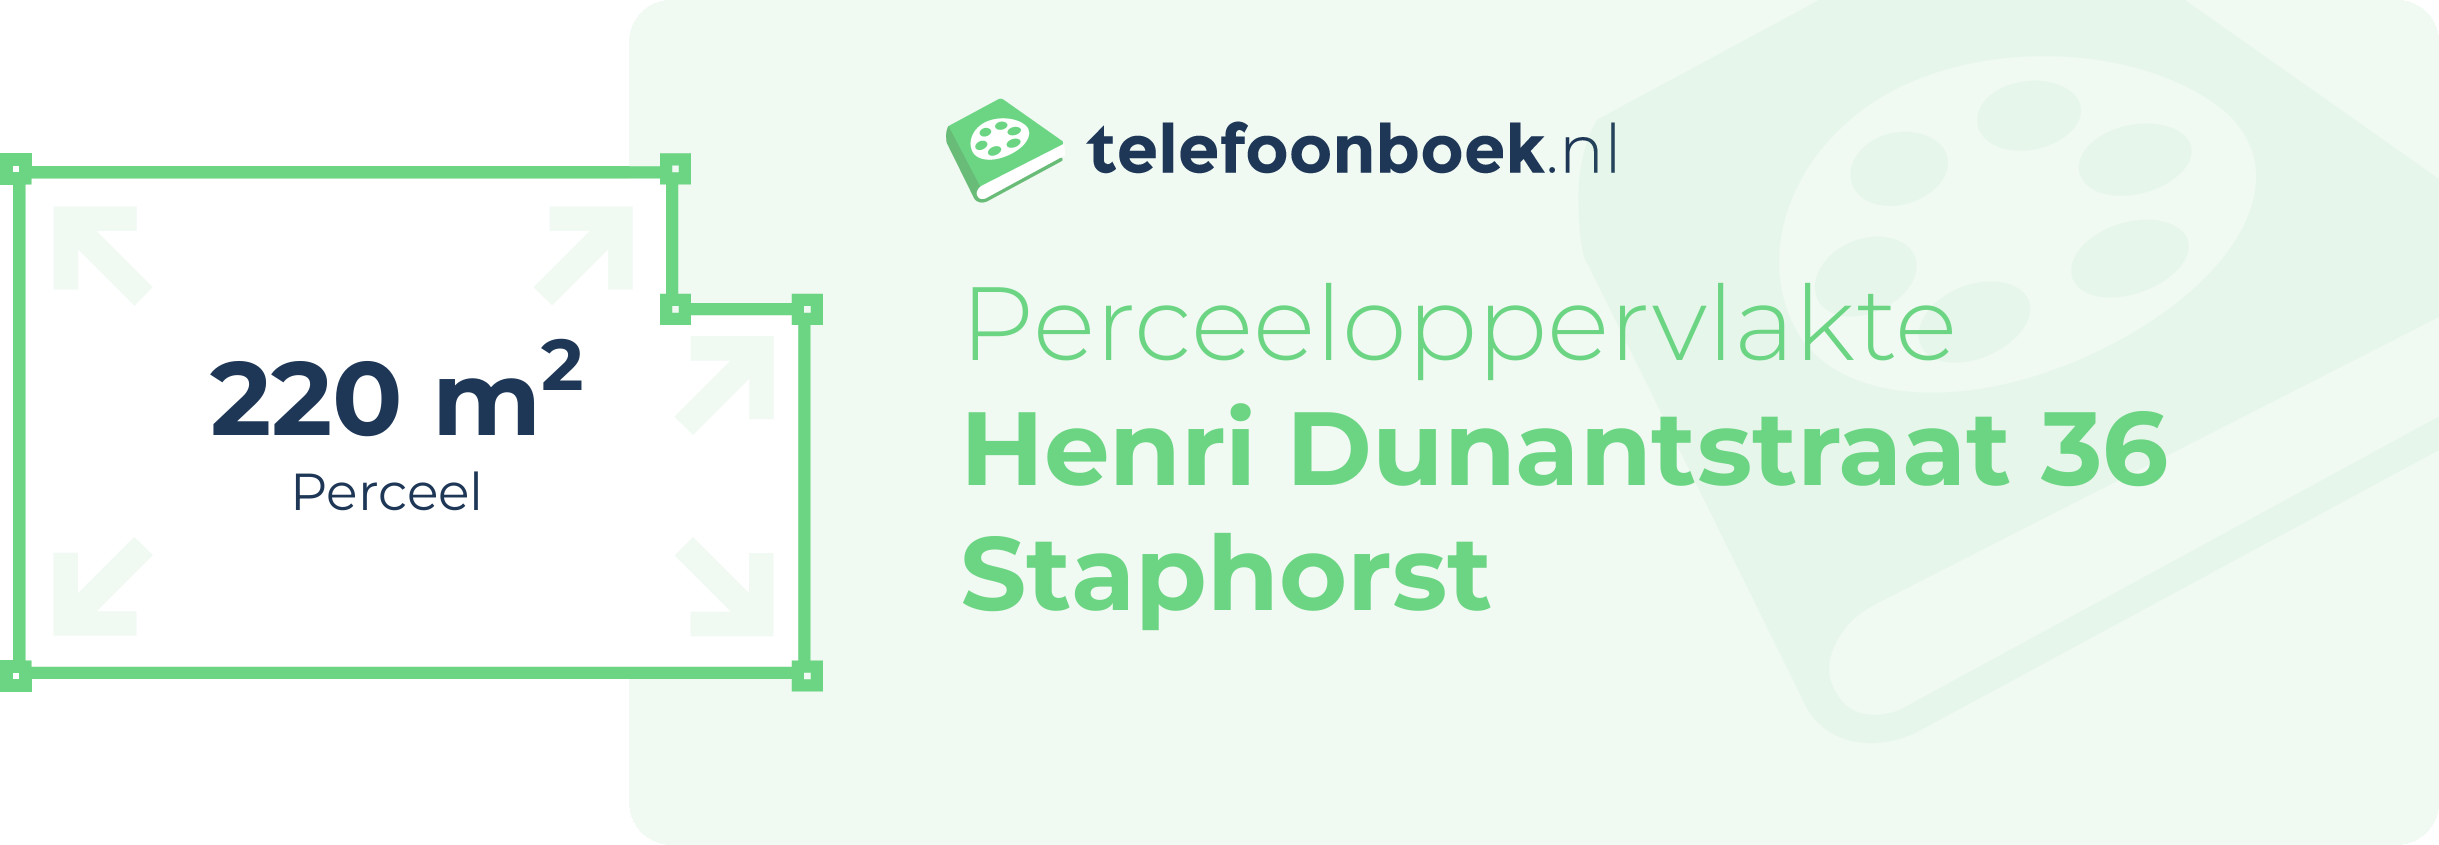 Perceeloppervlakte Henri Dunantstraat 36 Staphorst